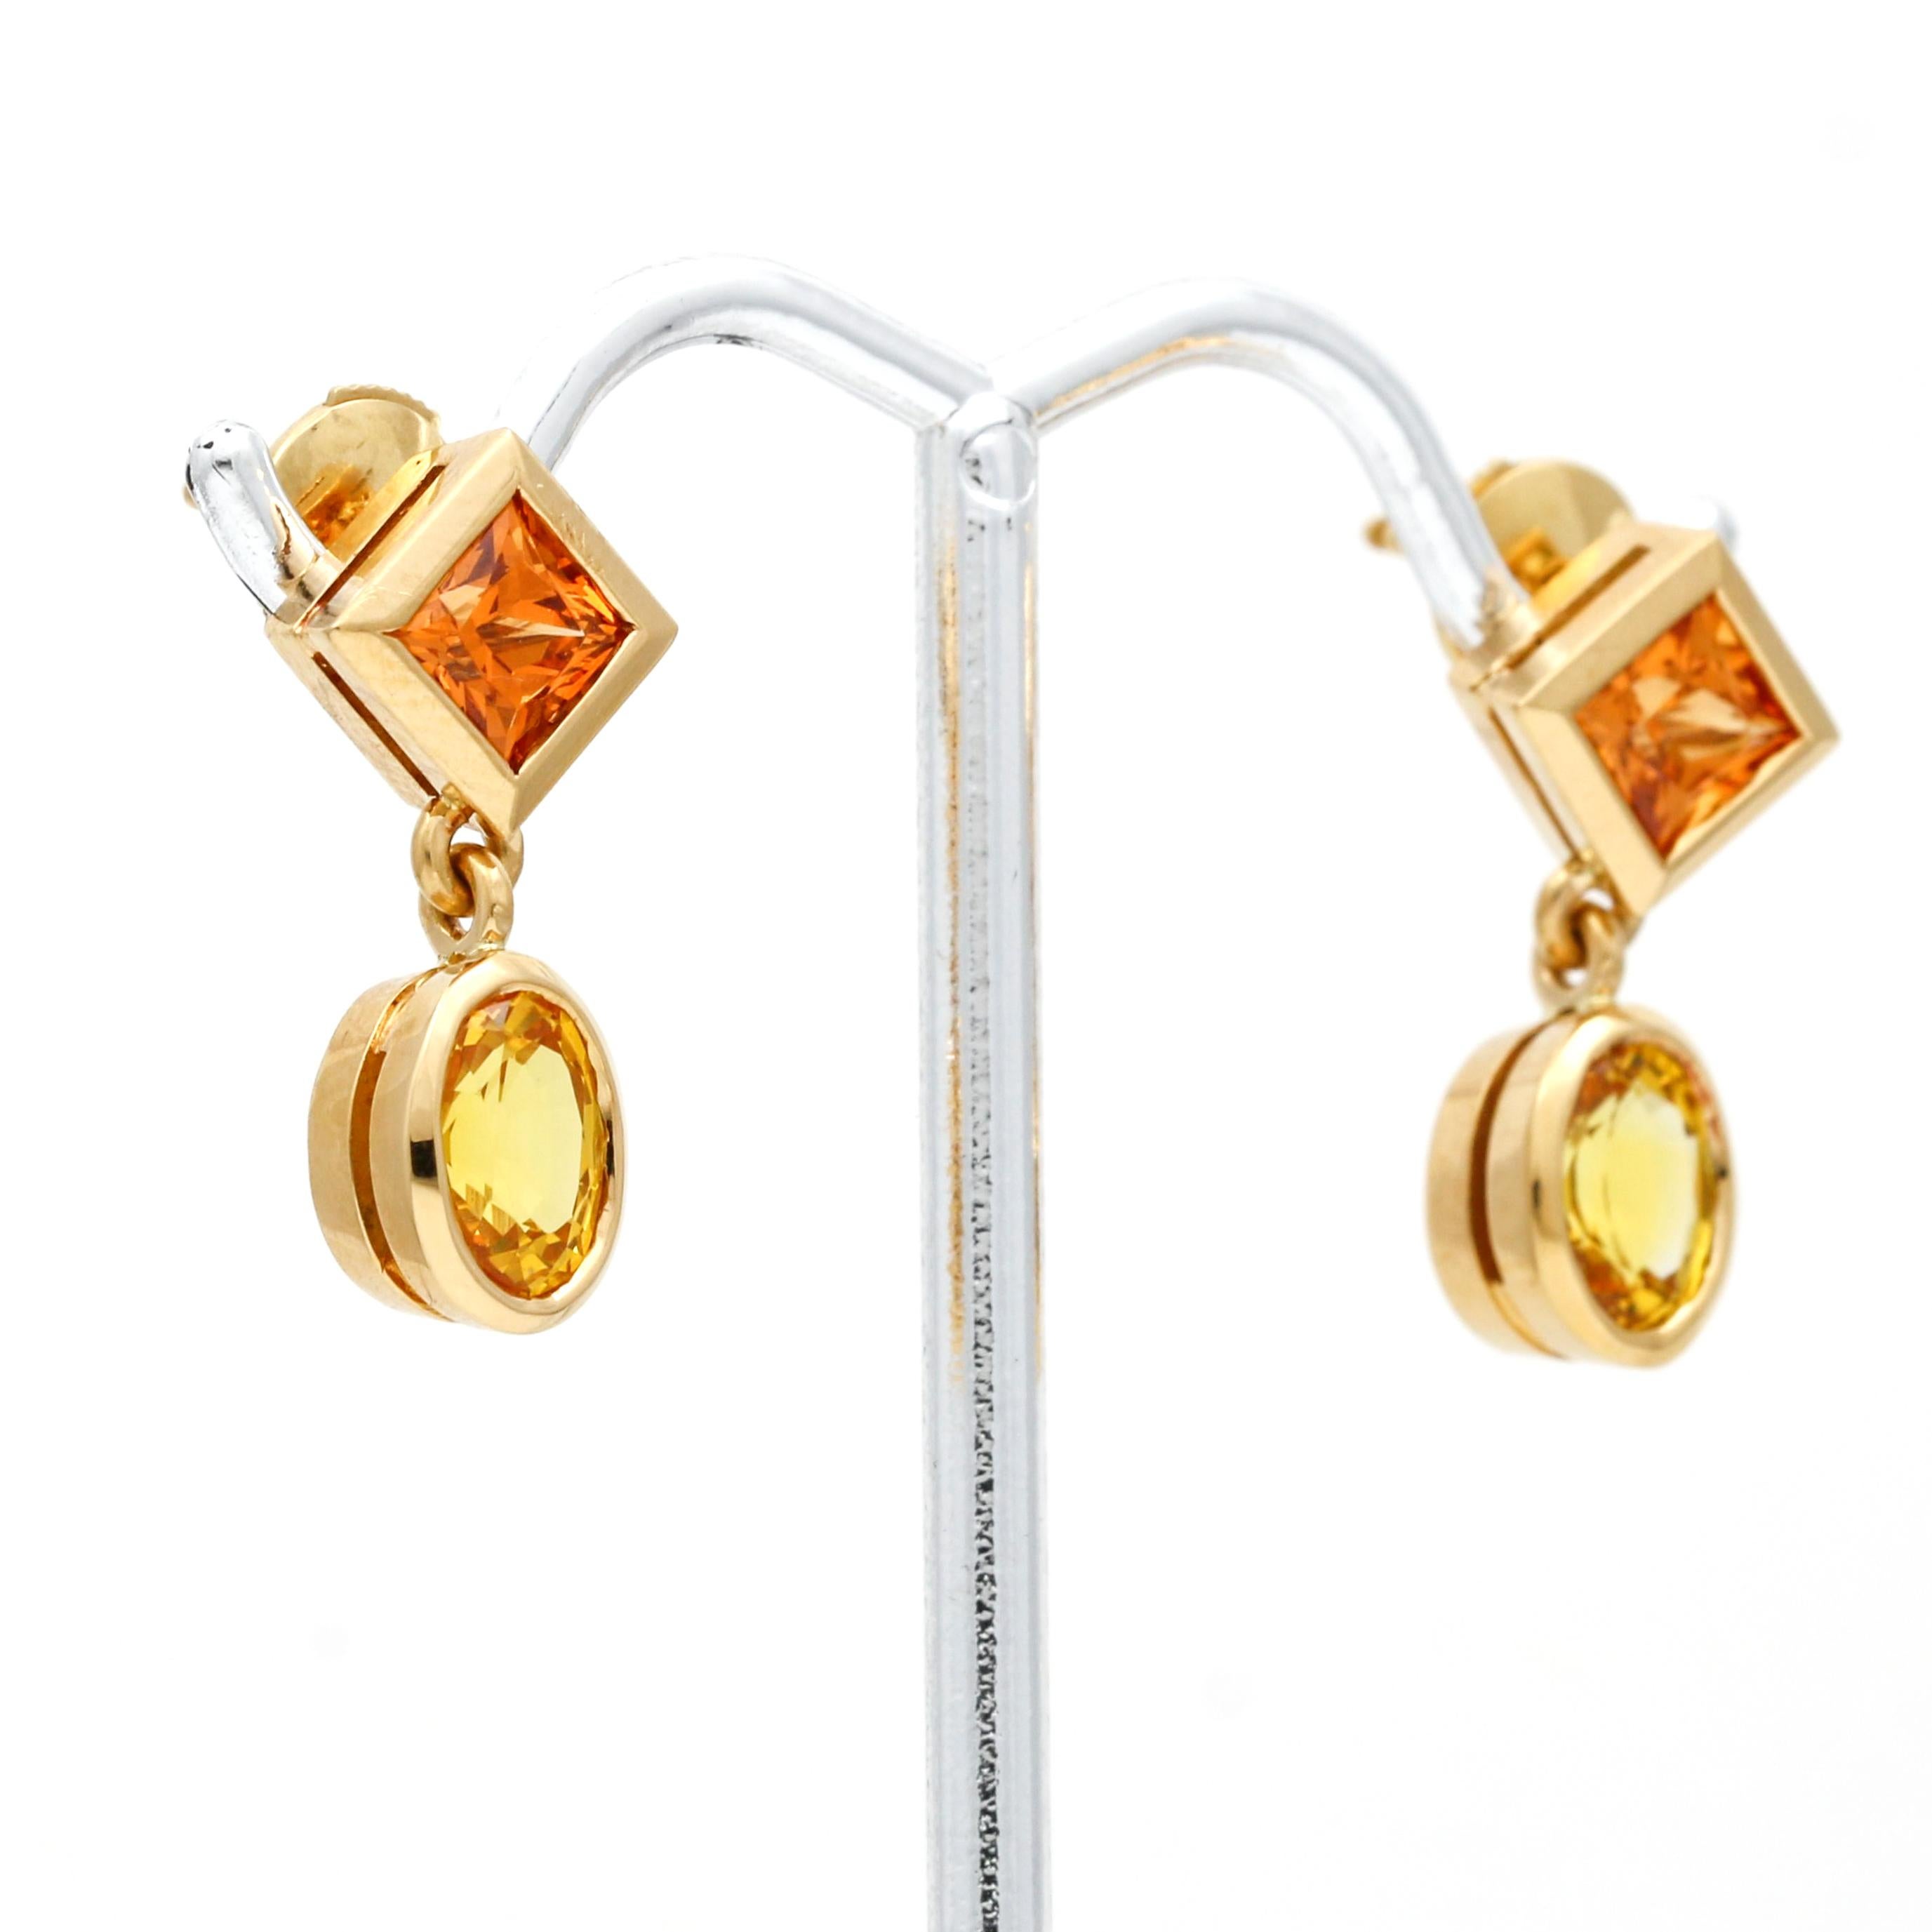 Diese Madeira-Ohrringe mit gelbem Saphir aus 18 Karat Gold sind atemberaubend und elegant. Jeder Ohrring besteht aus zwei schönen Edelsteinen in Zargenfassung, einem Madeira-Zitrin im Prinzessinnenschliff und einem gelben Saphir im Ovalschliff, die